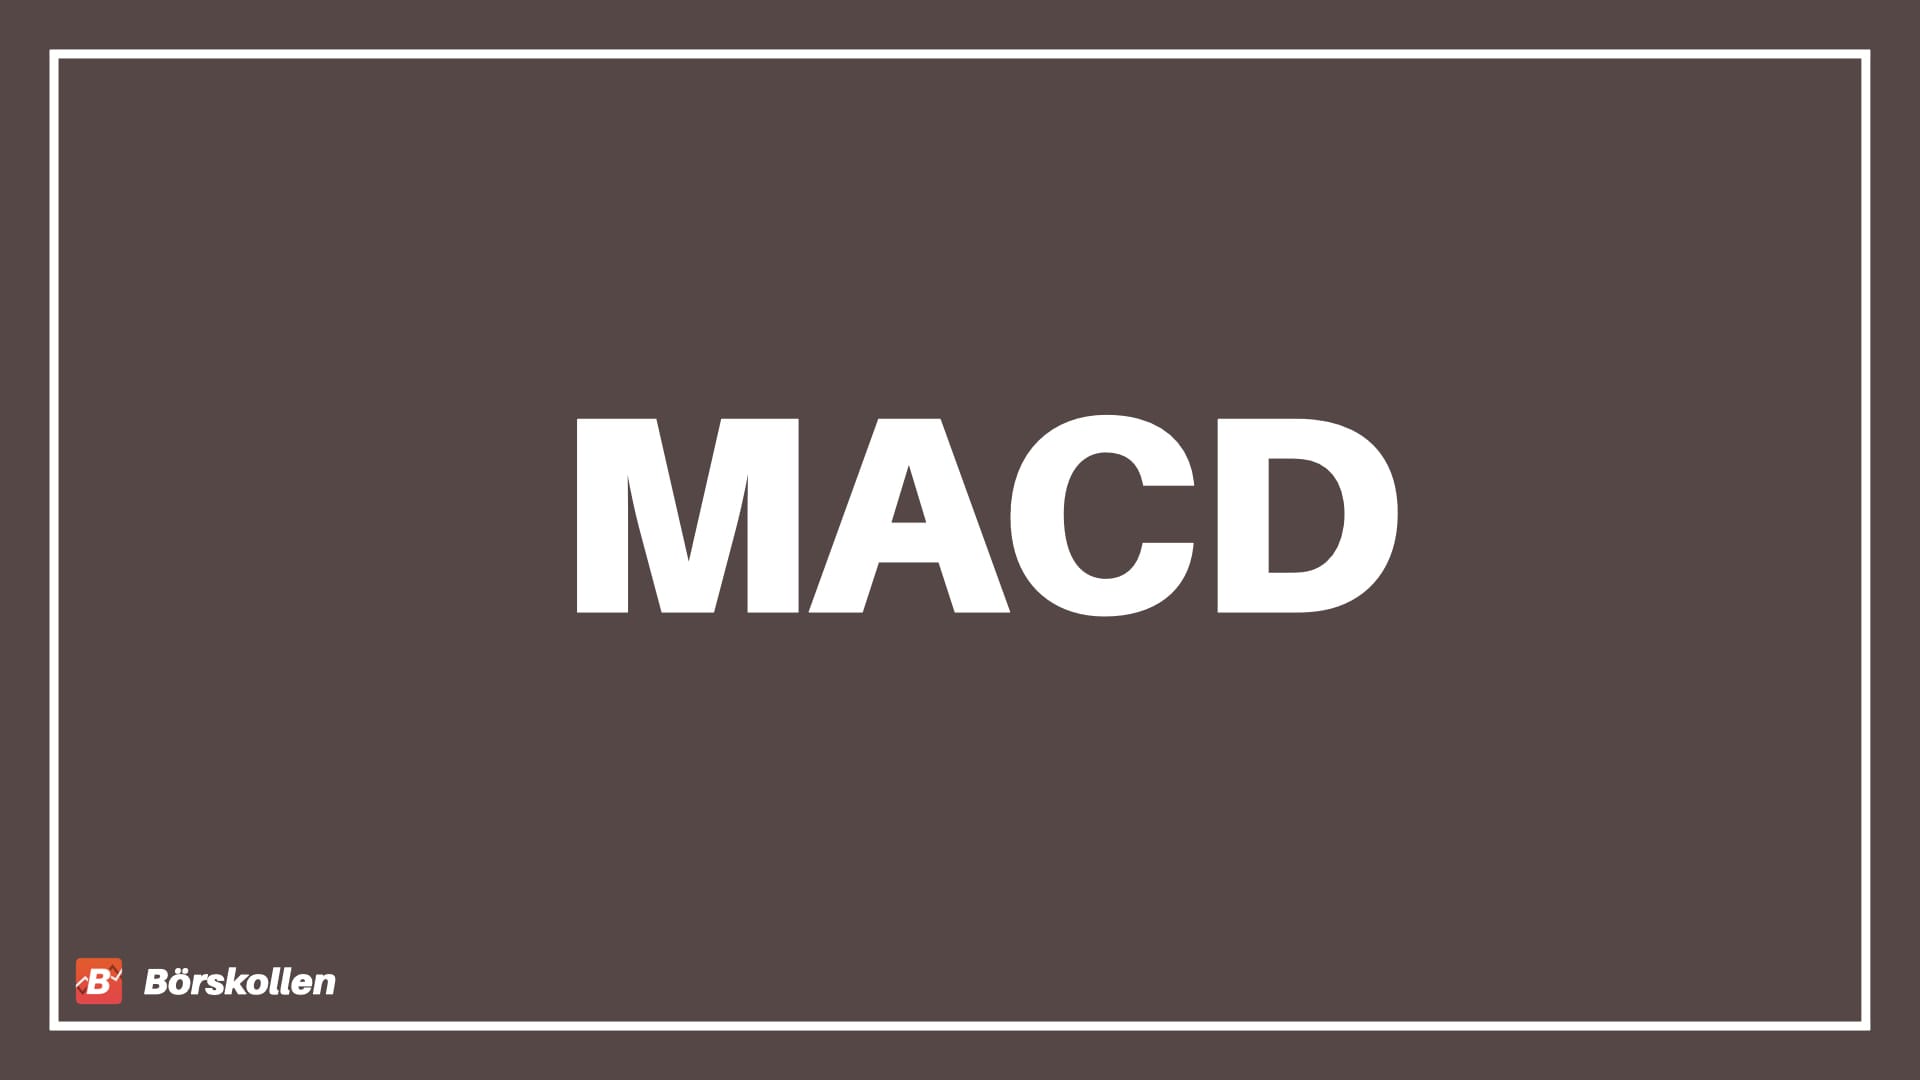 MACD – Vad är MACD?